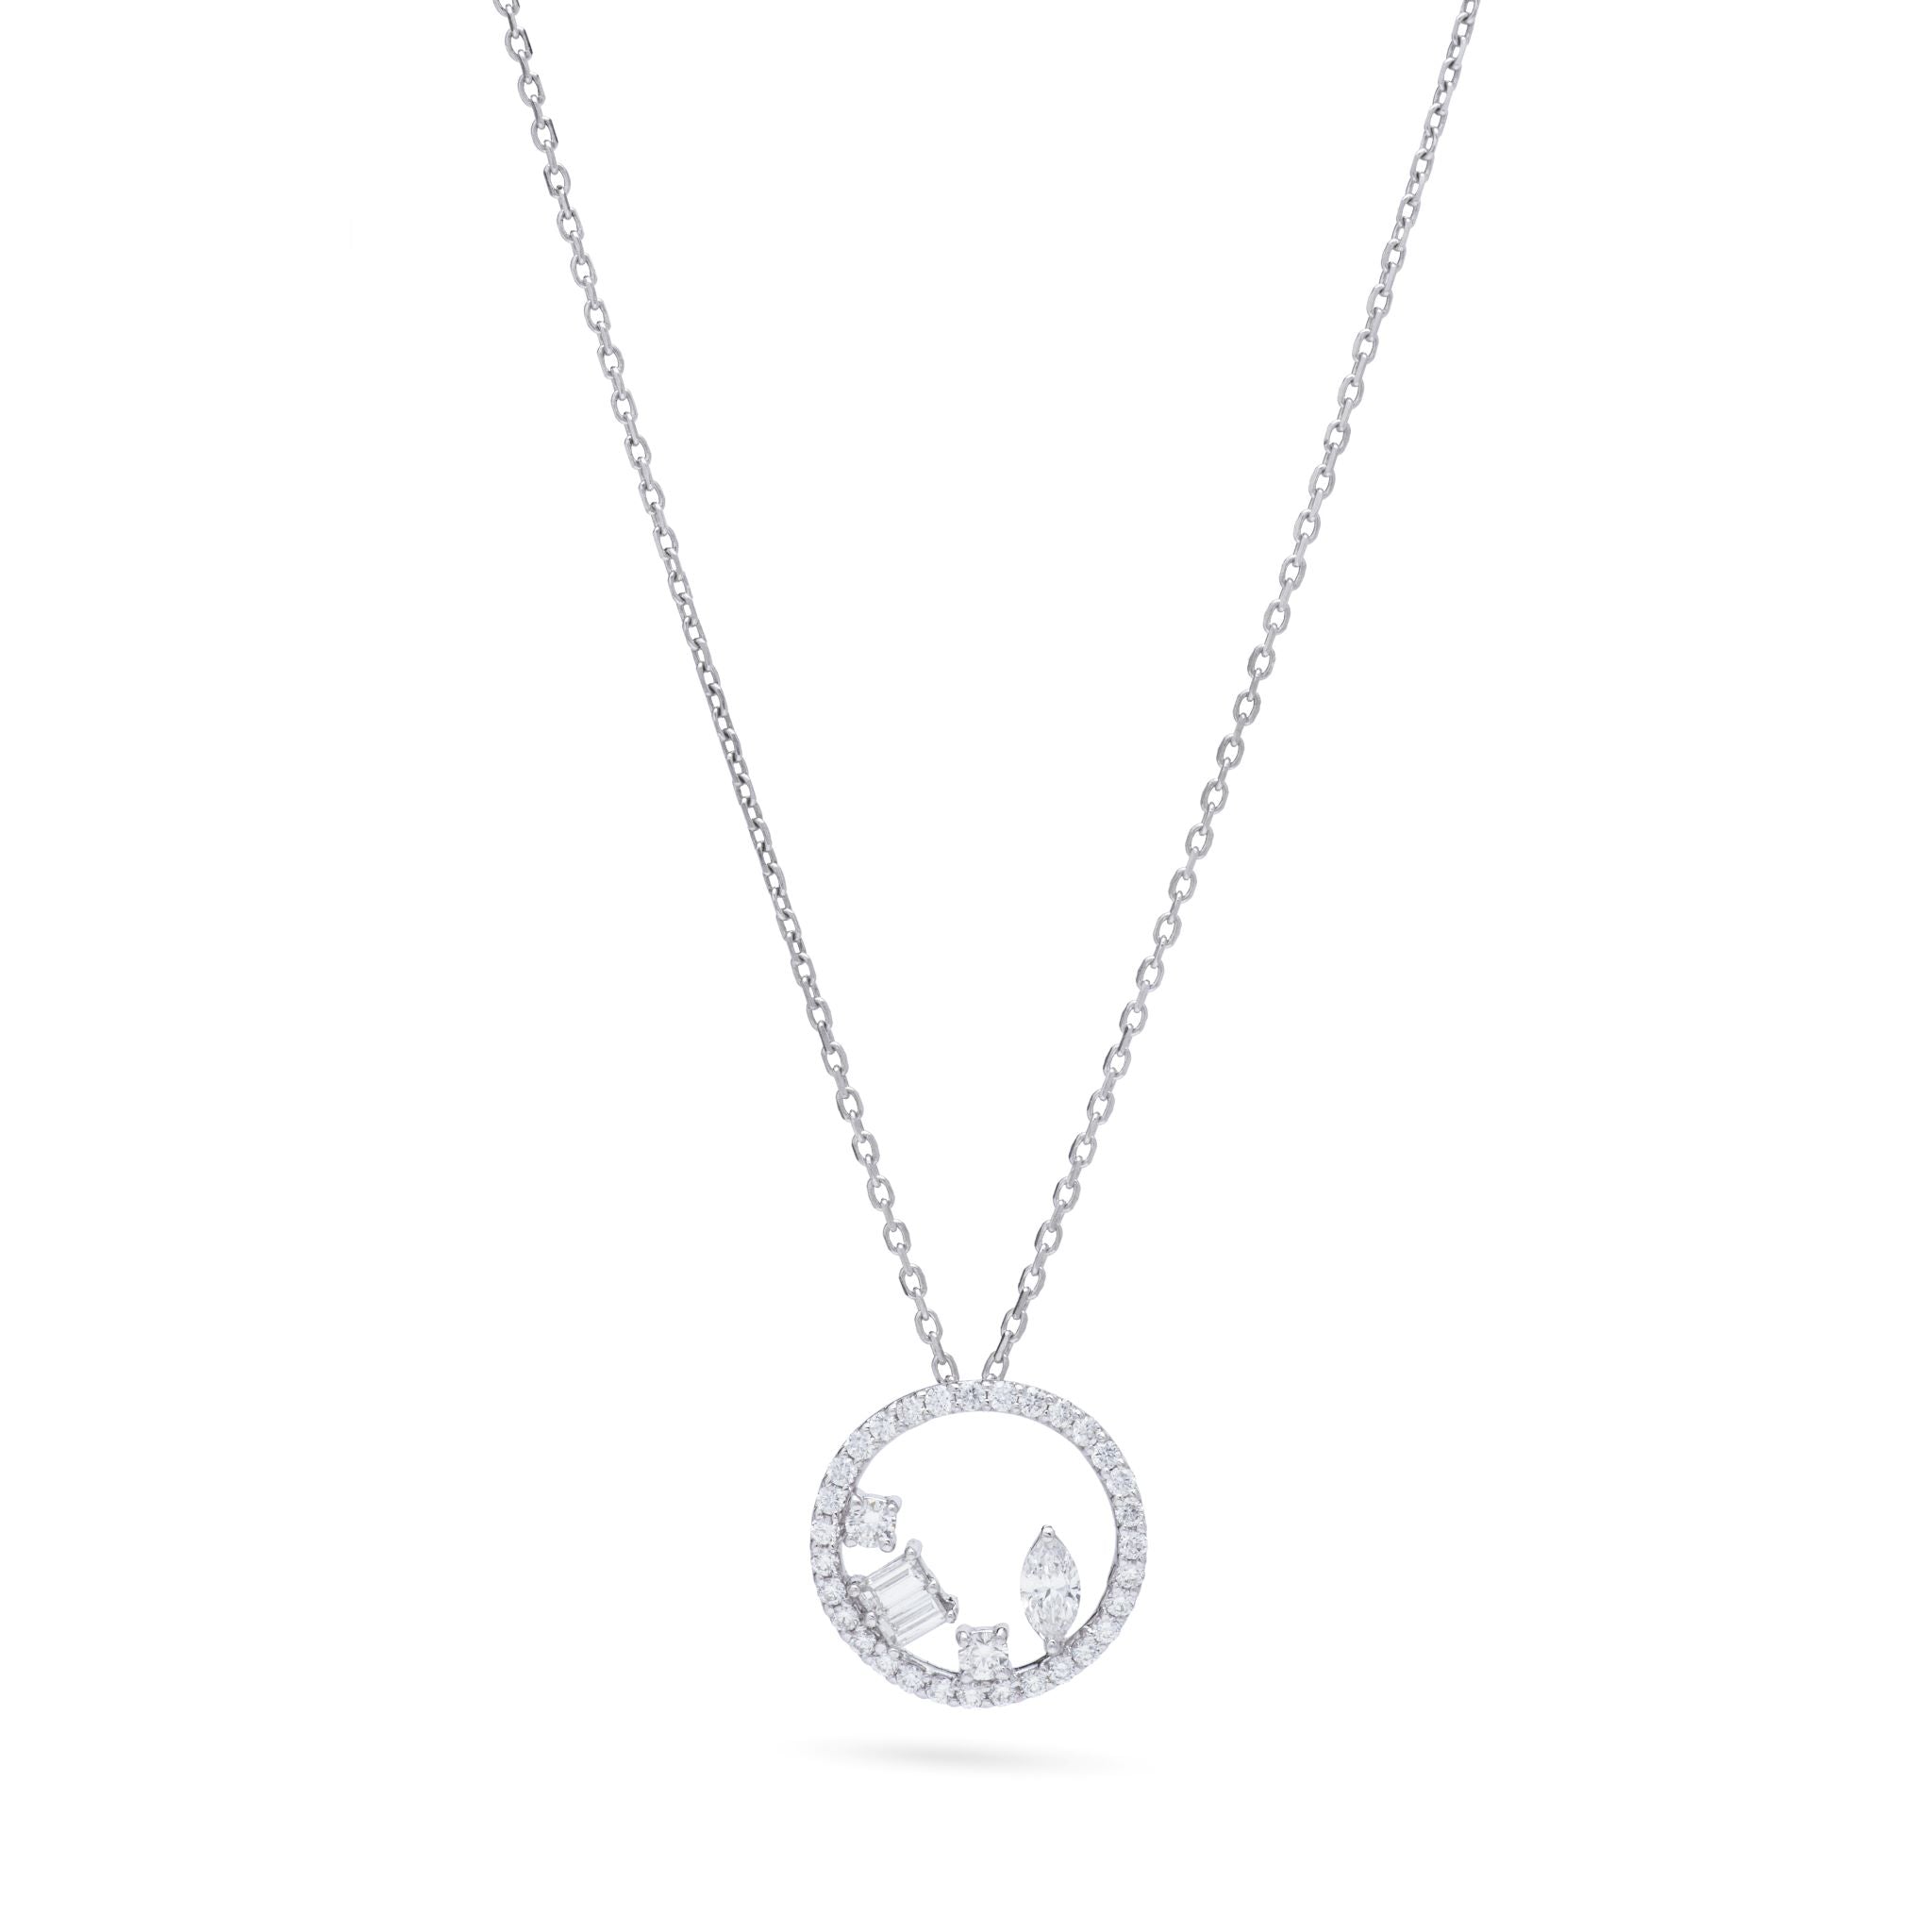 Unique Diamond Bars necklace in white 18K Gold -la3831